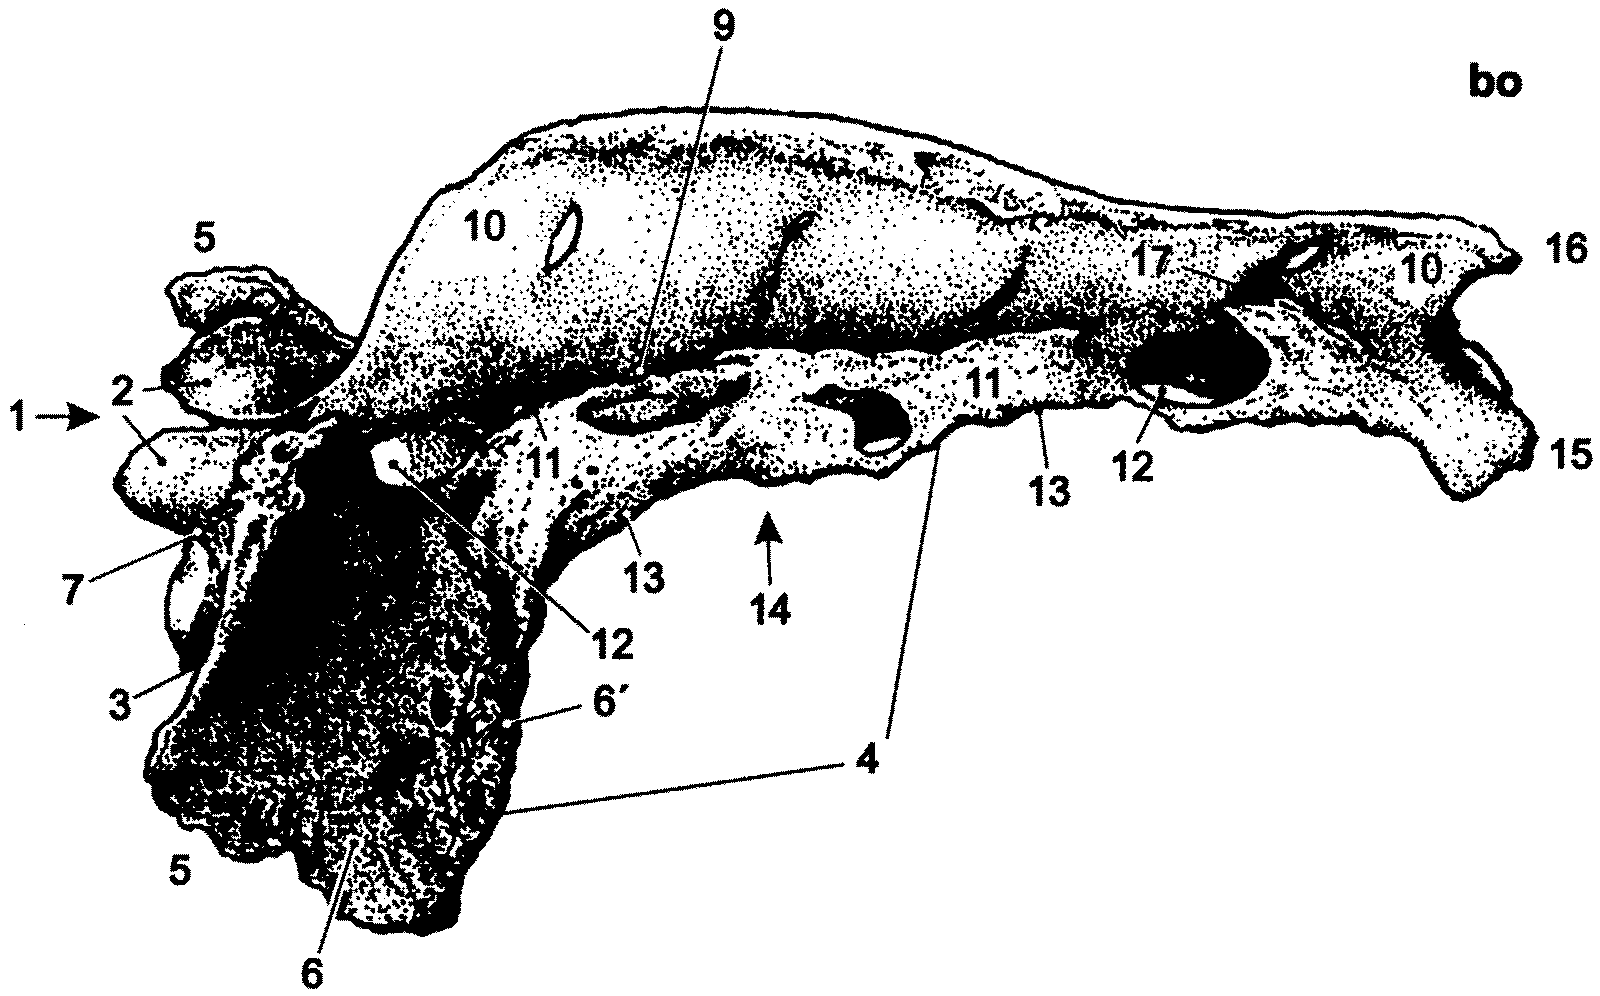 Křížová kost (os sacrum) 1 - basis ossis sacri základna křížové kosti 2 - processus articularis cranialis kraniální kloubní výběžek 3 promontorium předhoří 4 pars lateralis boční část 5 - ala ossis